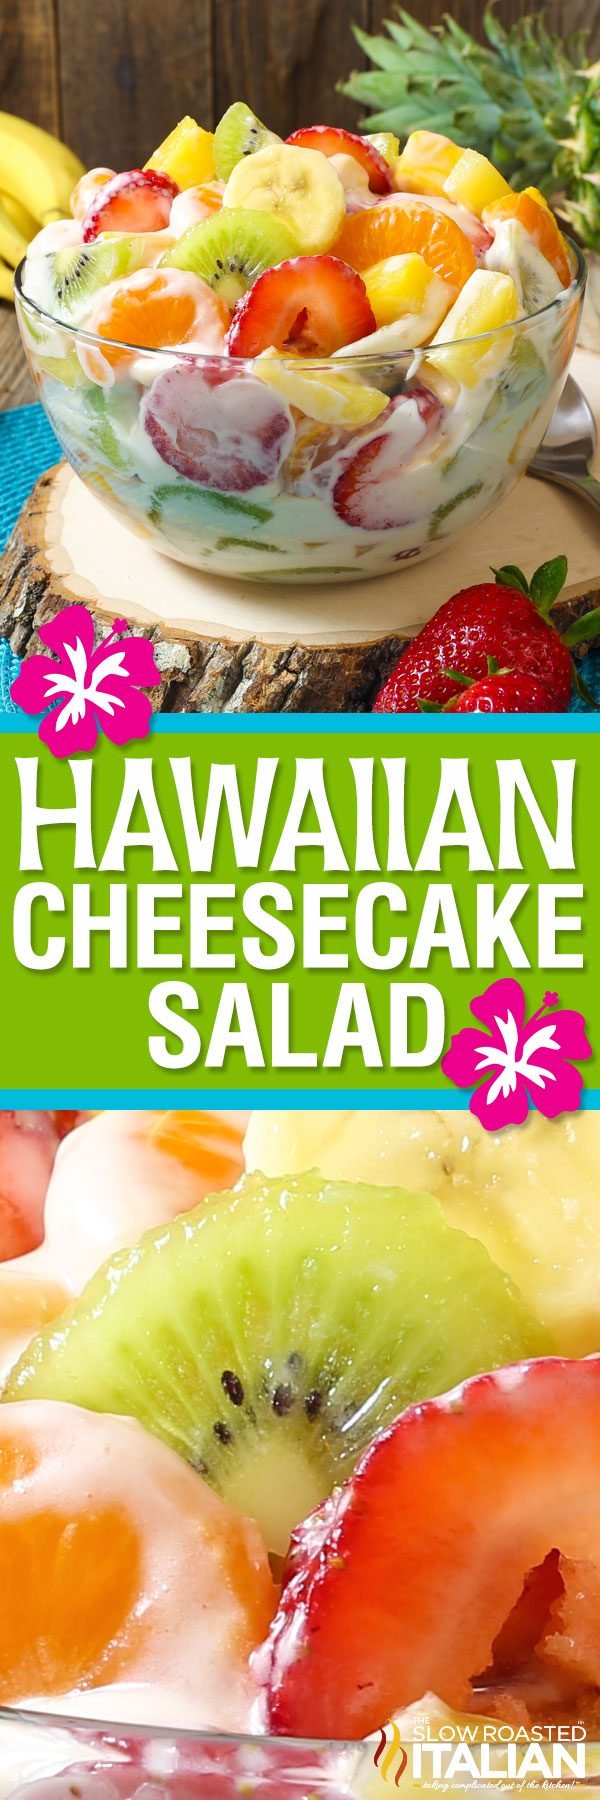 hawaiian-cheesecake-salad2-pin-2844829